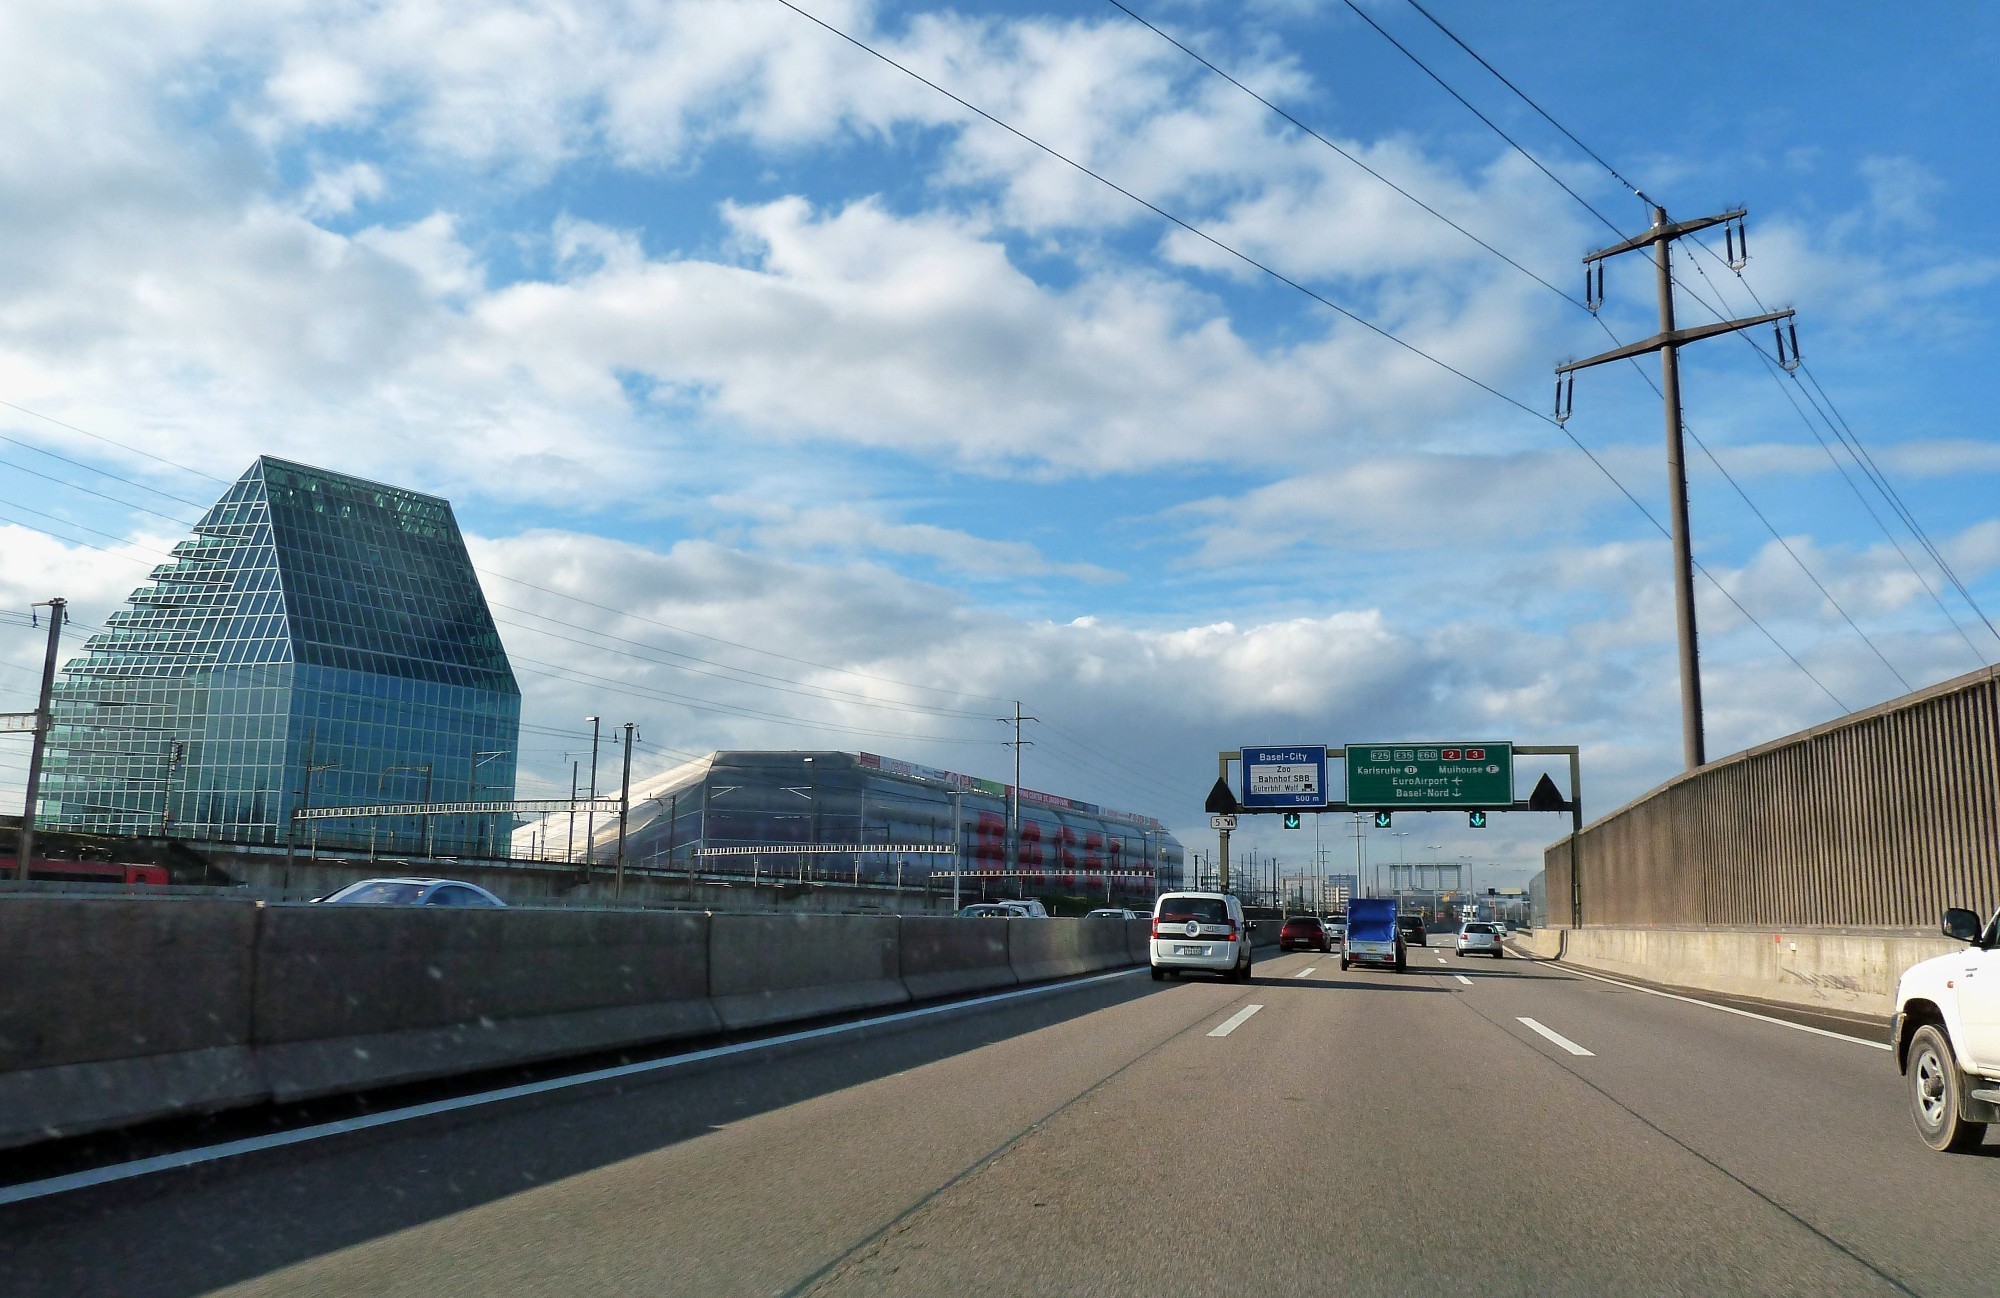 La tangente Est de Bâle est une partie de l’autoroute A2 qui contourne la ville de Bâle par l’est et passe à proximité du stade de football de Saint-Jacques.